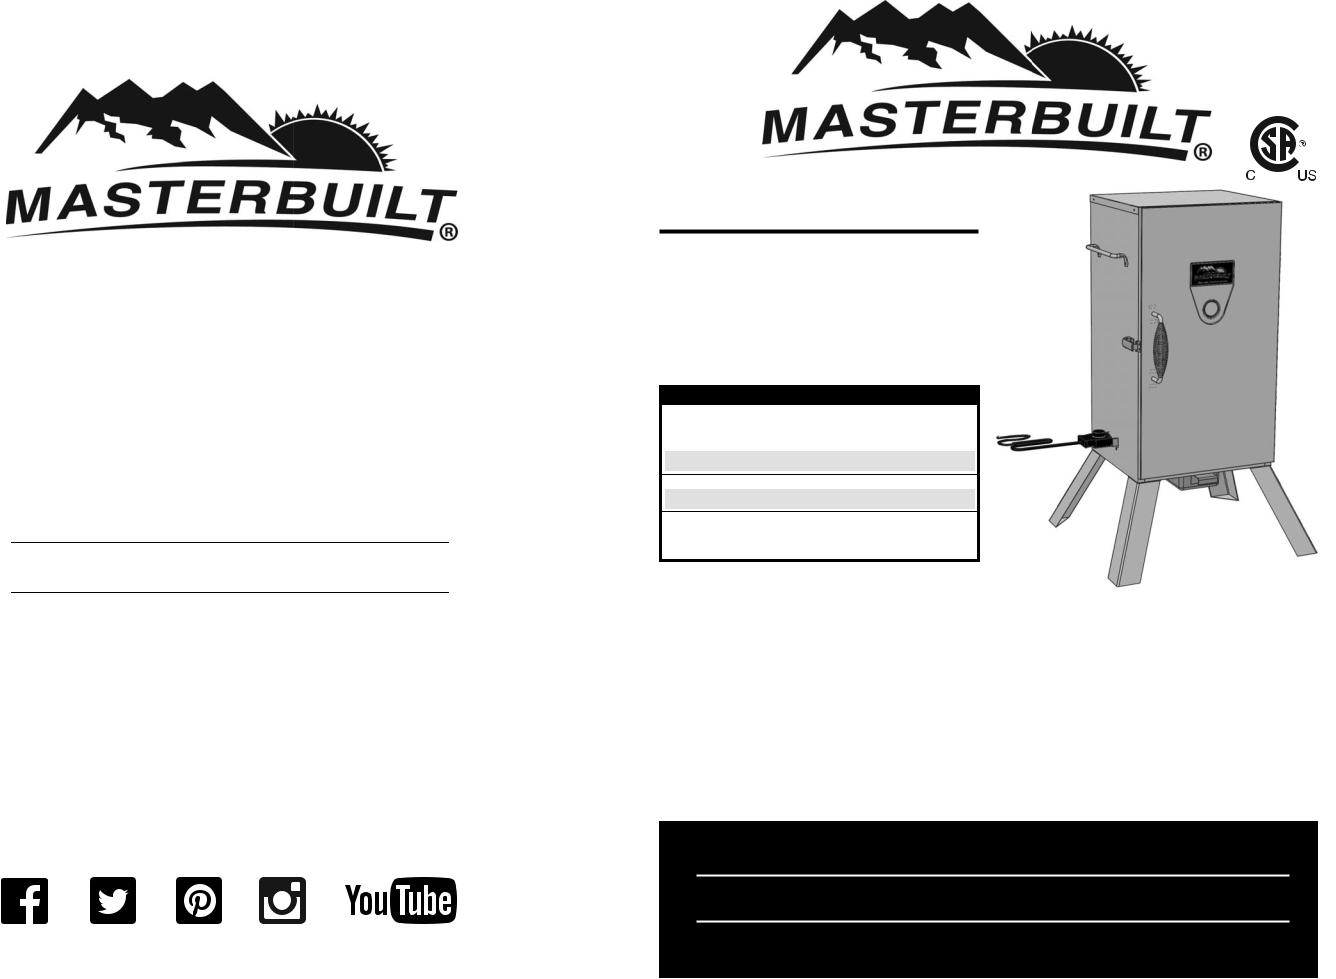 Masterbuilt 20075517 Owner's Manual